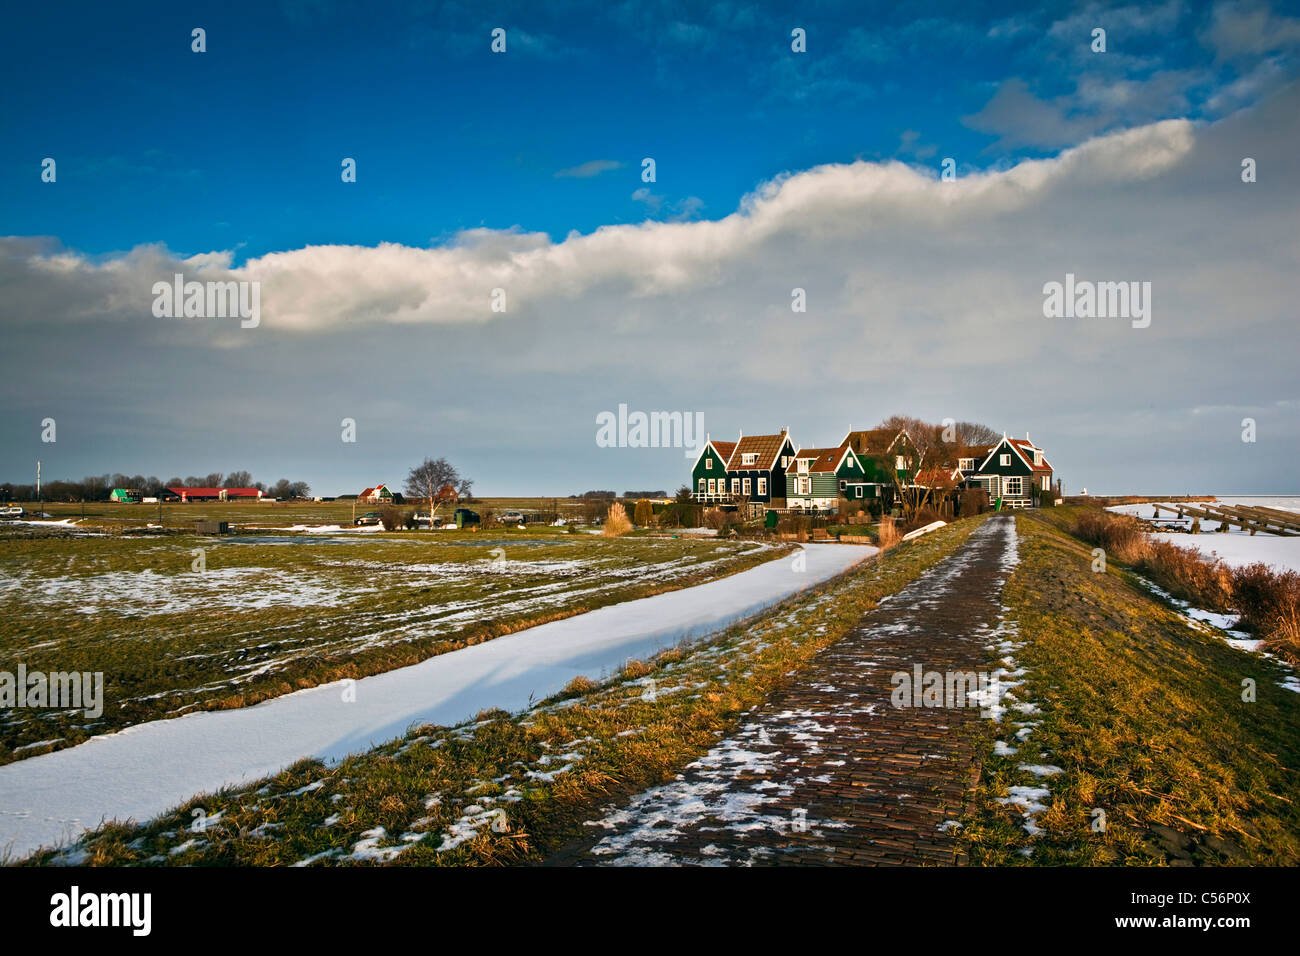 Niederlande, Marken, Winter, Schnee, Blick auf Hamlet und Deich. Stockfoto